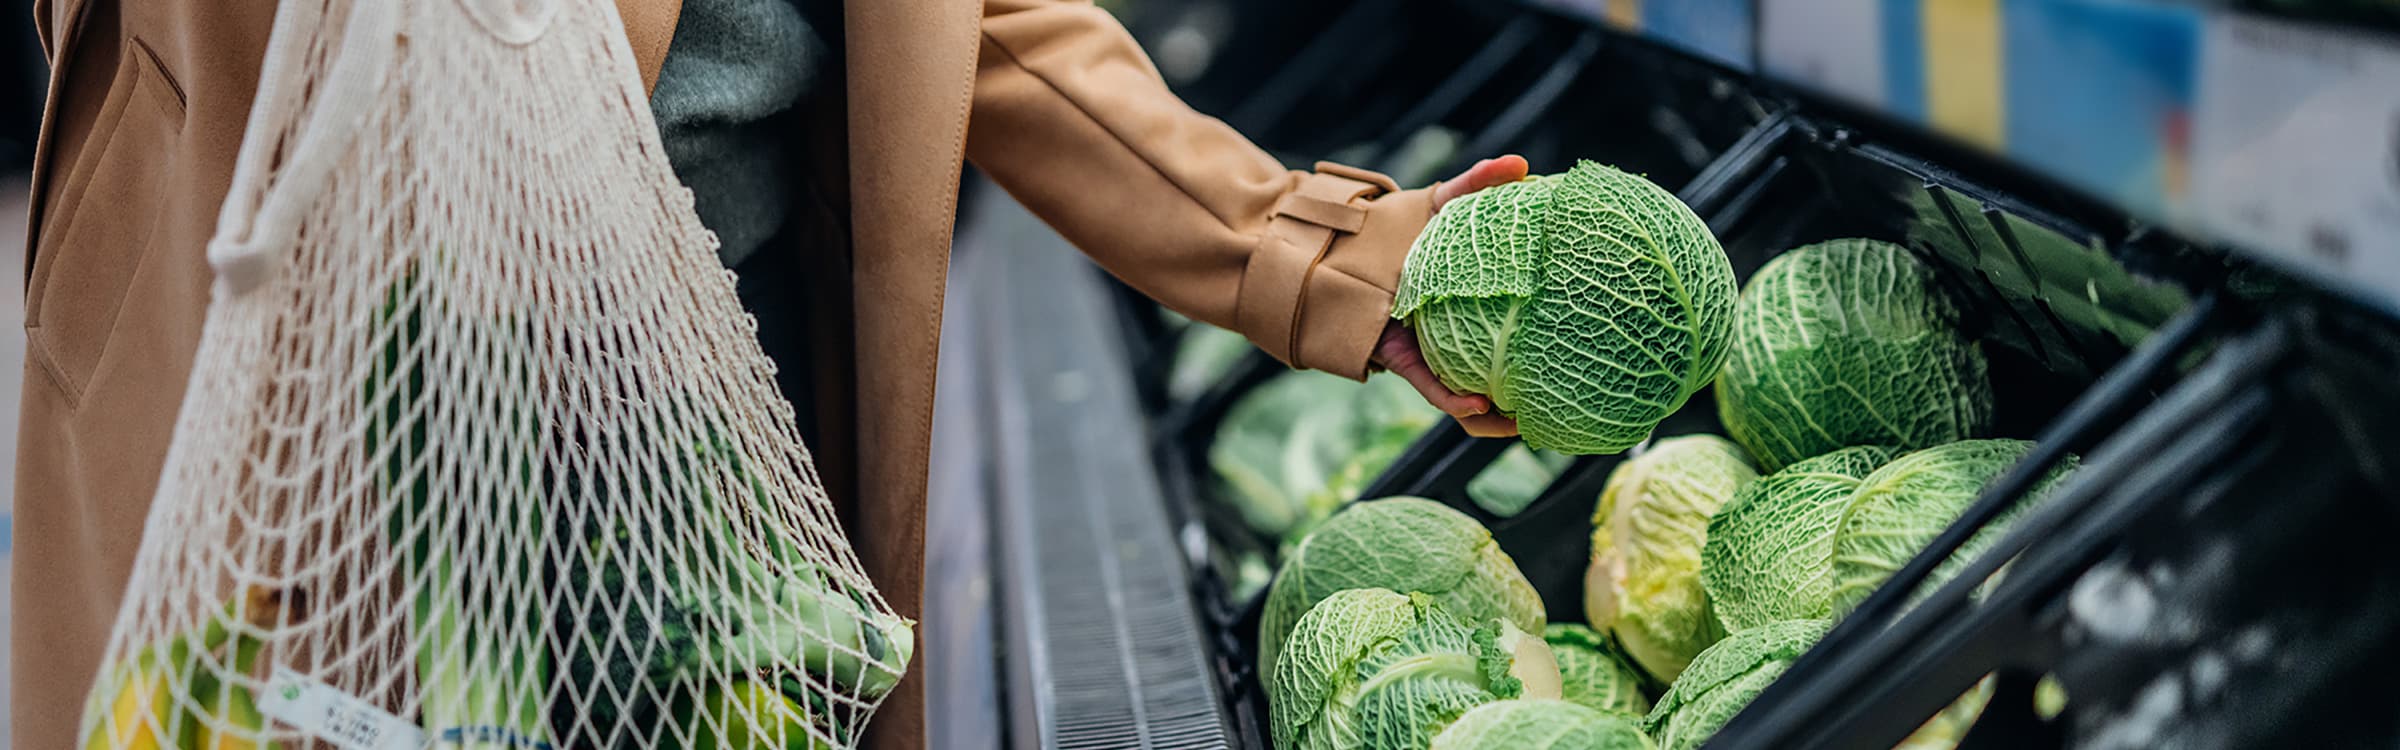 Woman picking veg in supermarket